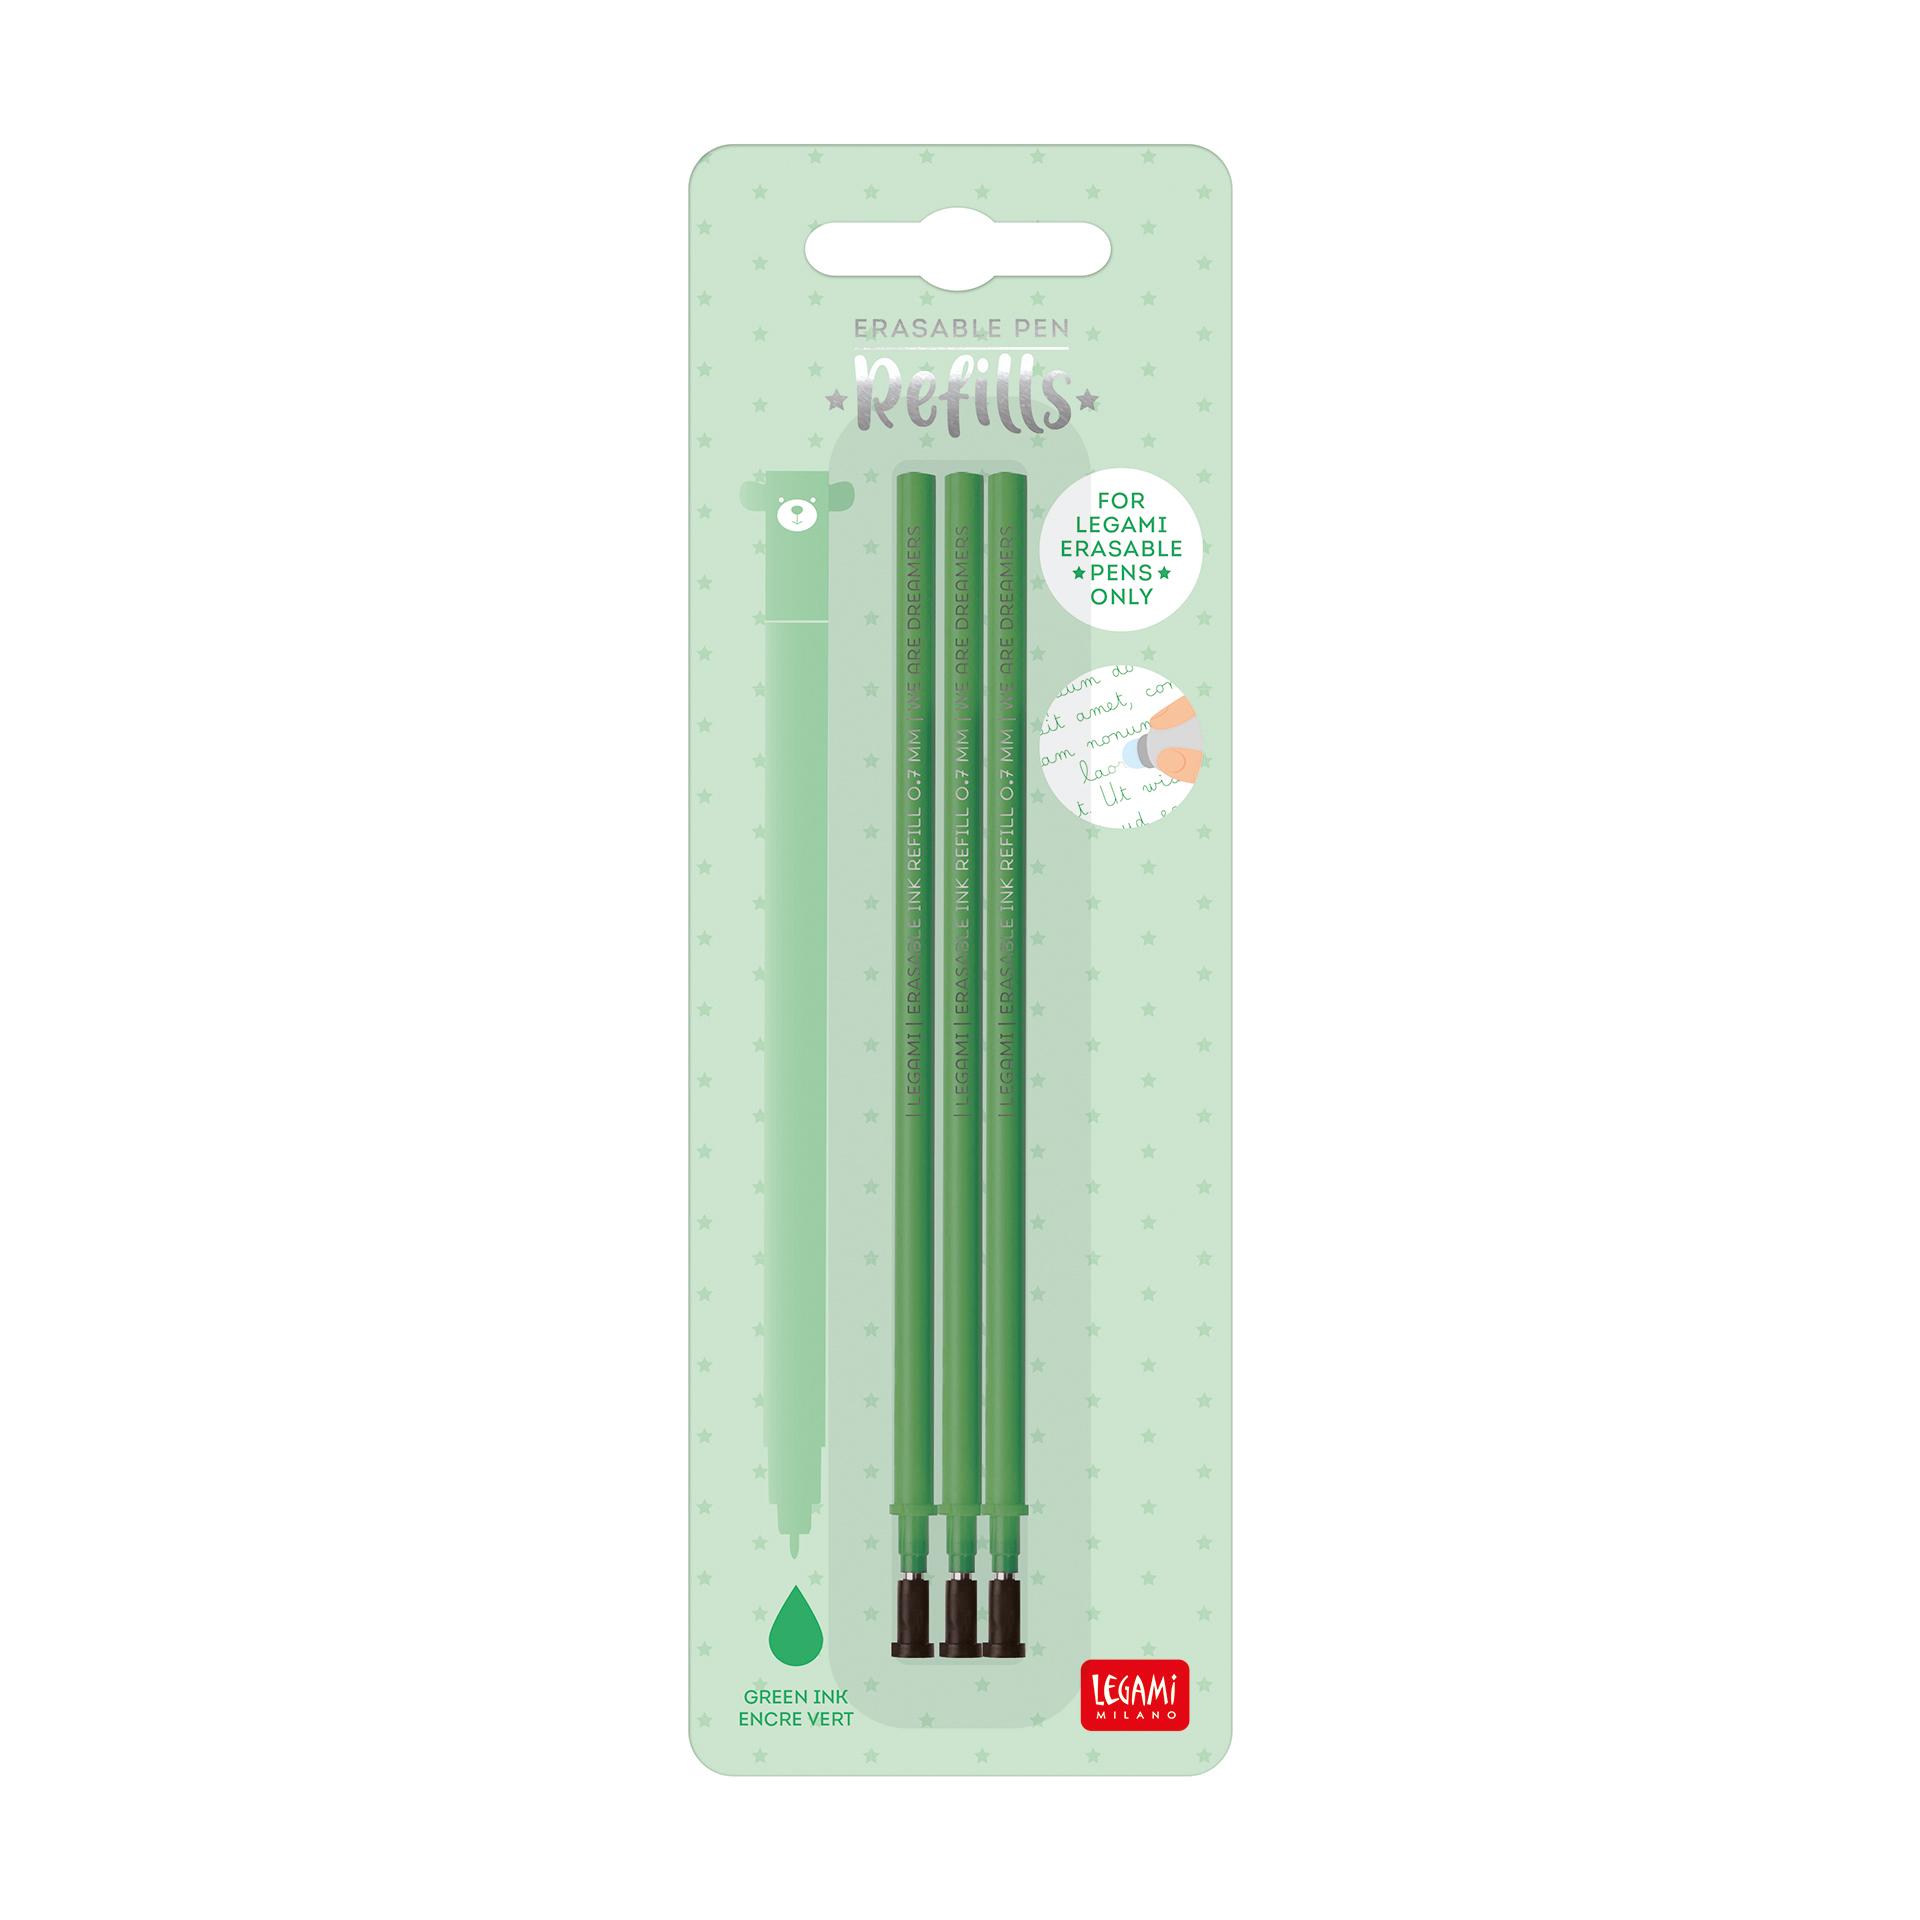 Refills for erasable pen green